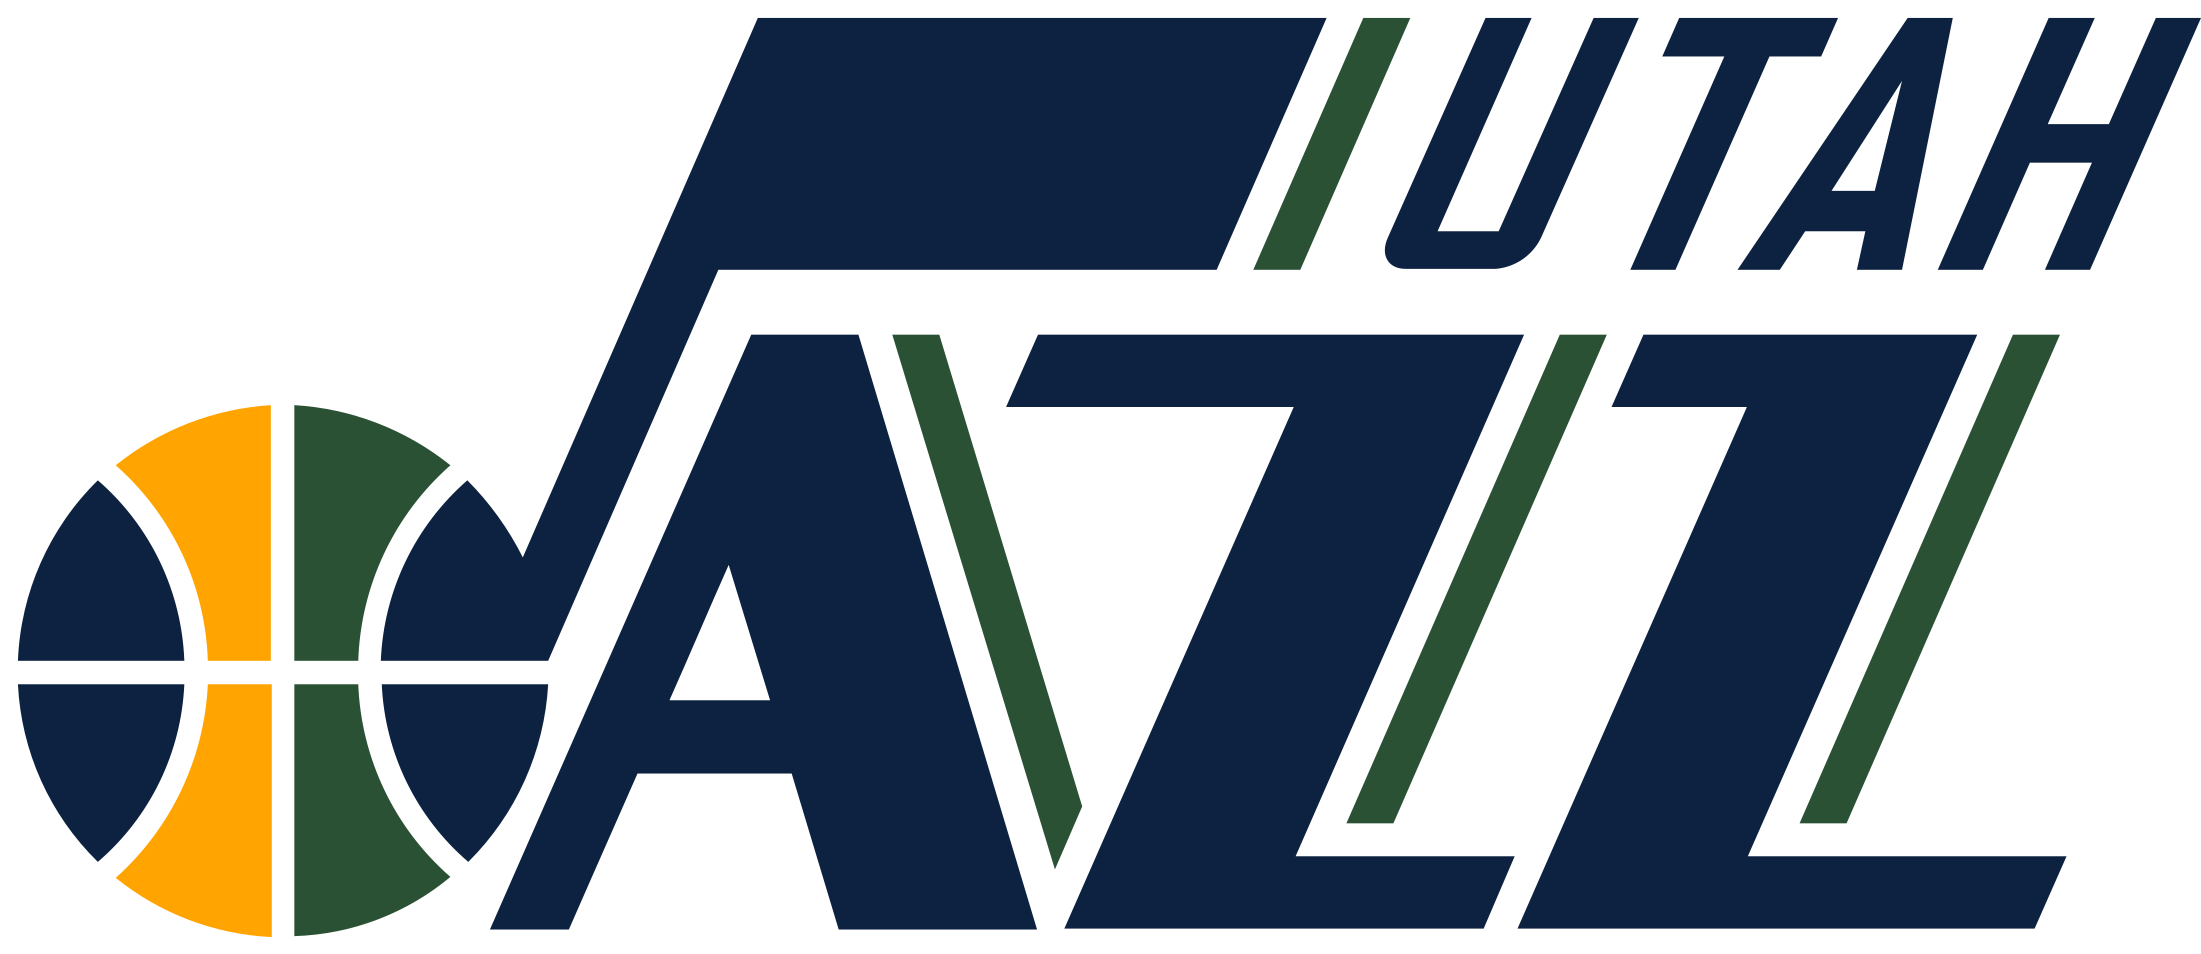 Utah Jazz Logo Transparent - Utah Jazz Logo 2018 (2400x953), Png Download